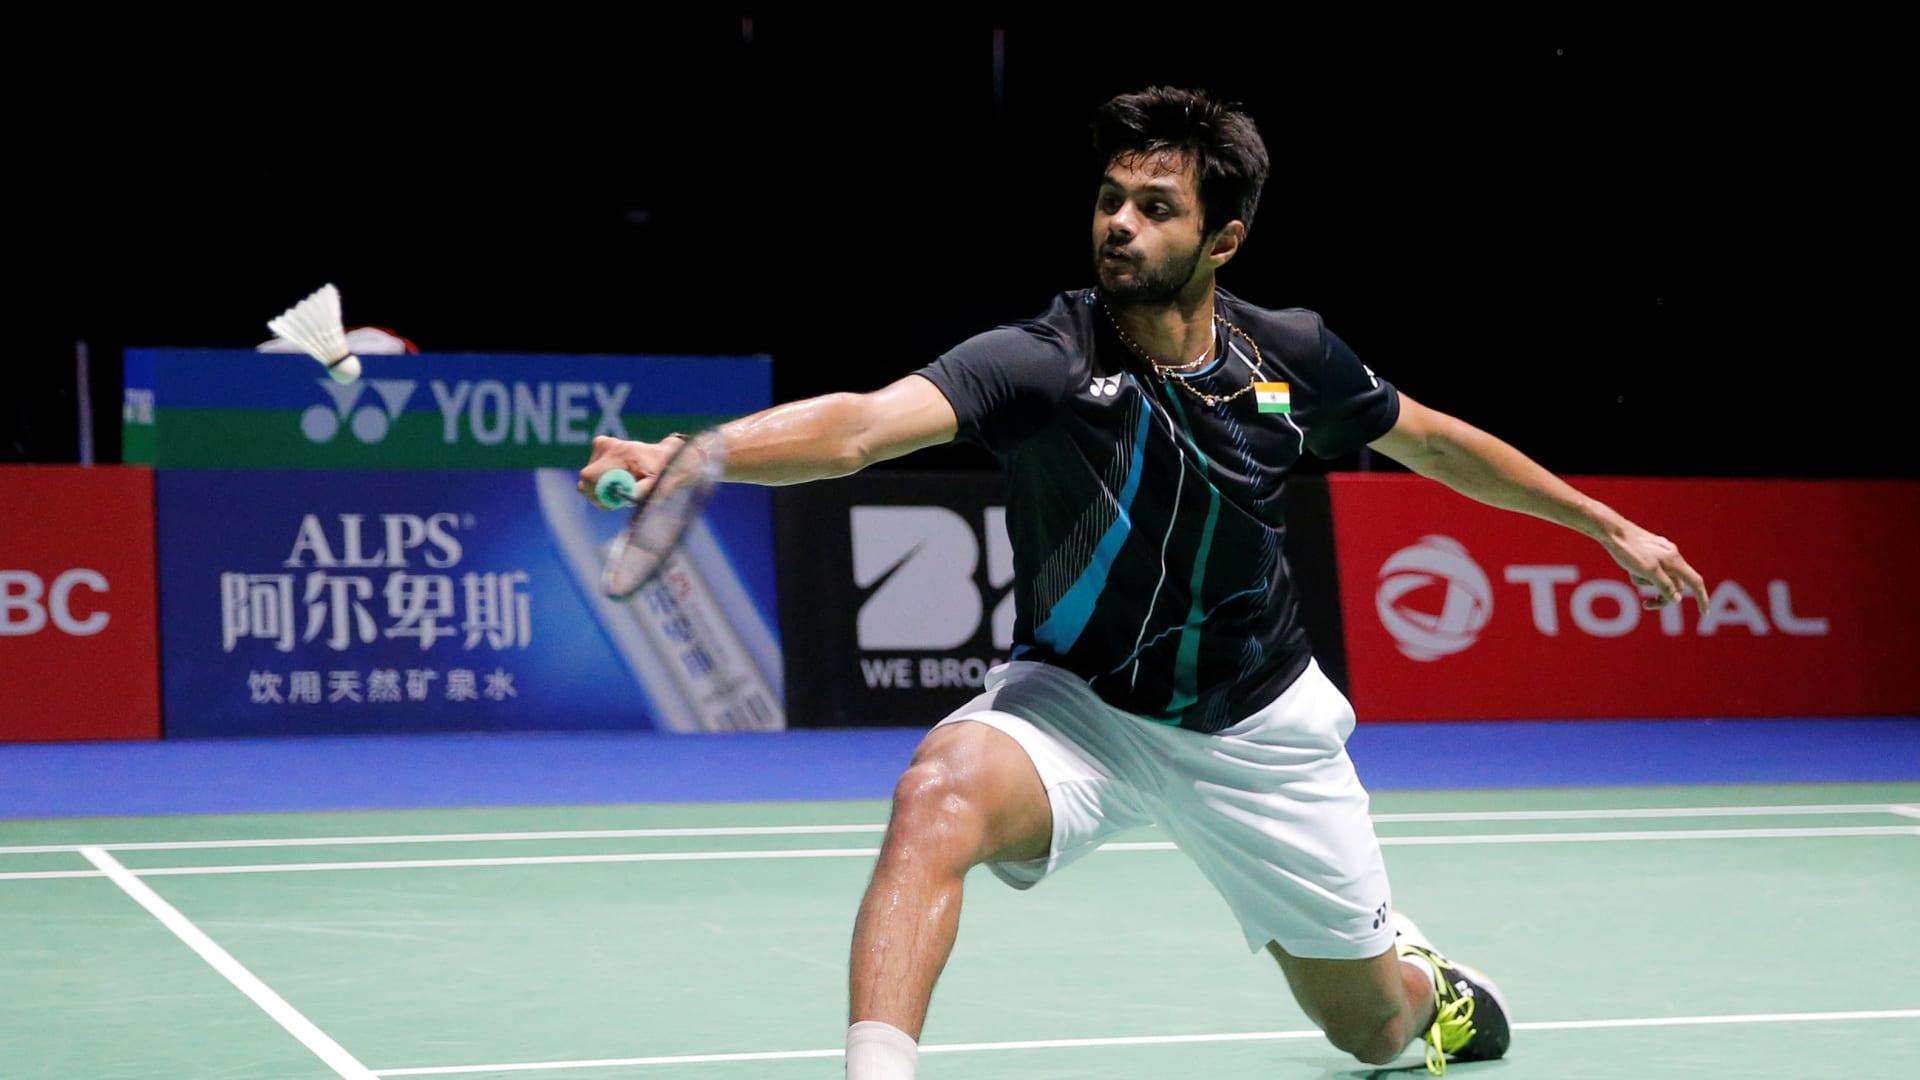 Badminton : थाईलैंड ओपन में प्रणीत कोविड पॉजिटिव, श्रीकांत ने वापस लिया नाम